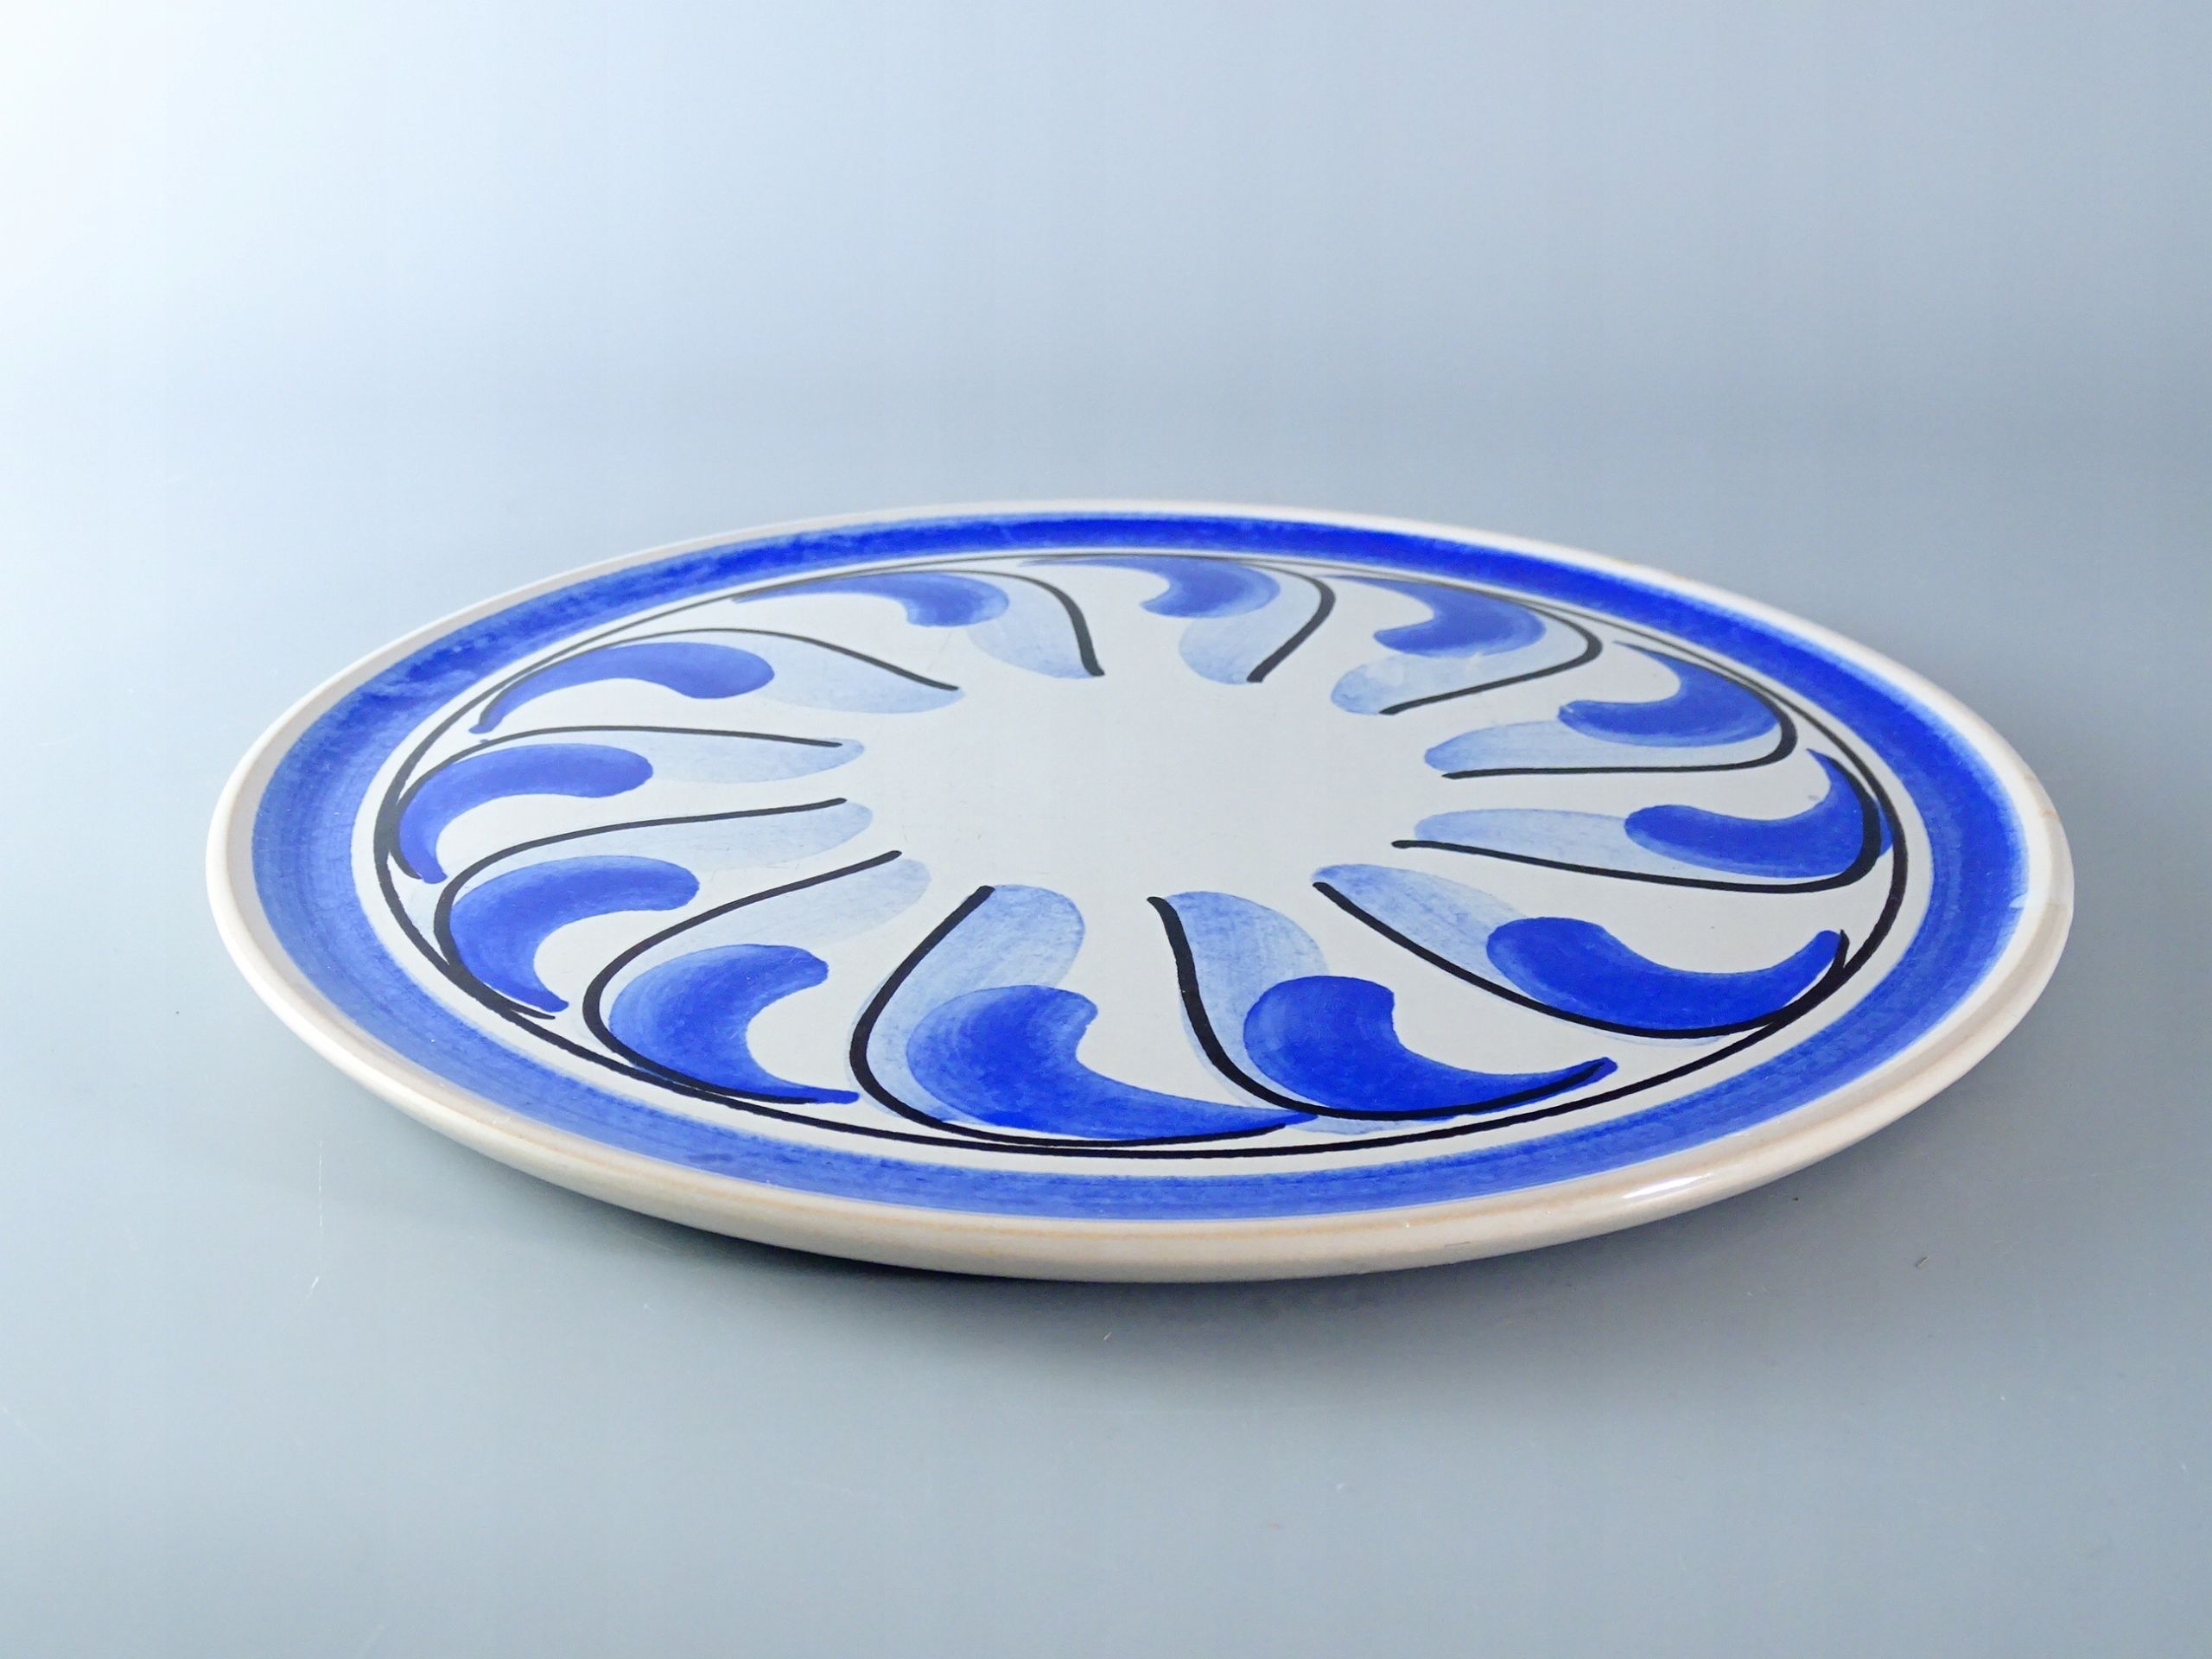 malowana ceramiczna patera tortownica